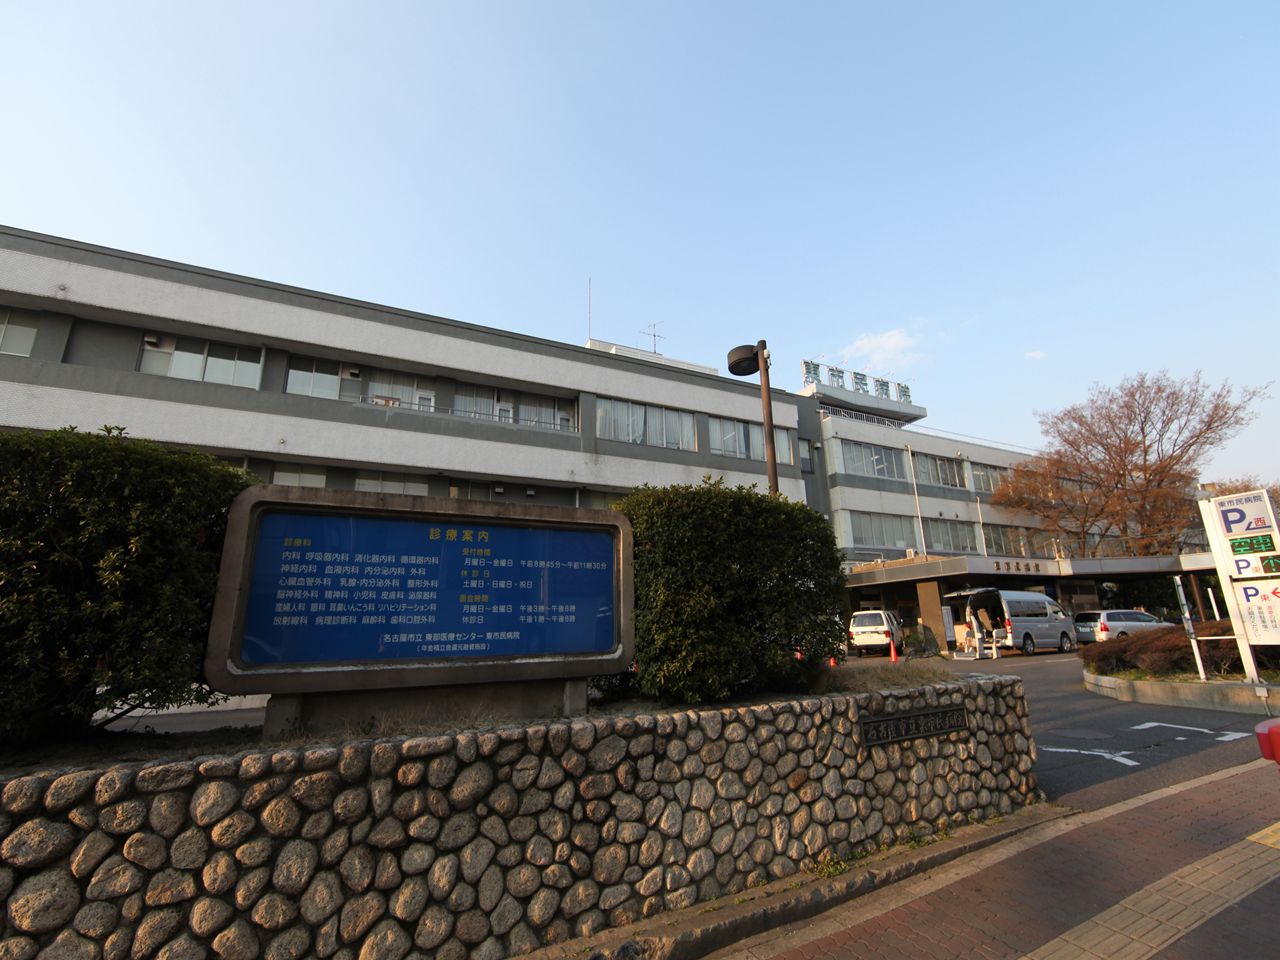 Hospital. 800m to Nagoya Municipal Eastern Medical Center (General Hospital) (hospital)